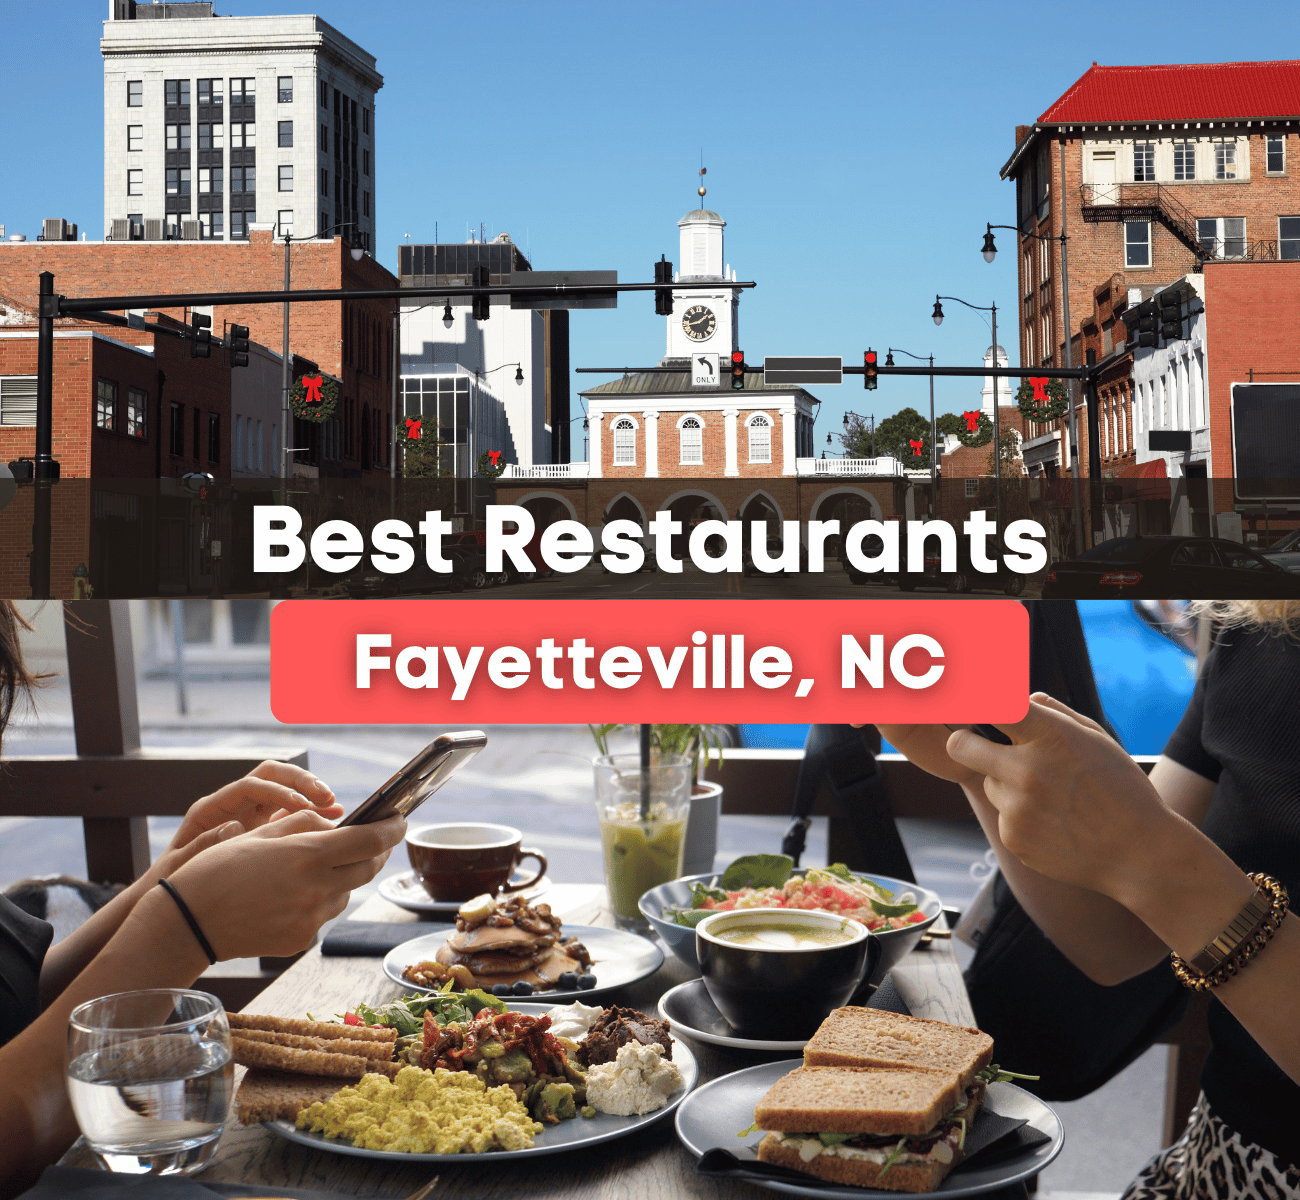 best restaurants in Fayetteville, NC - Downtown Fayetteville and restaurant